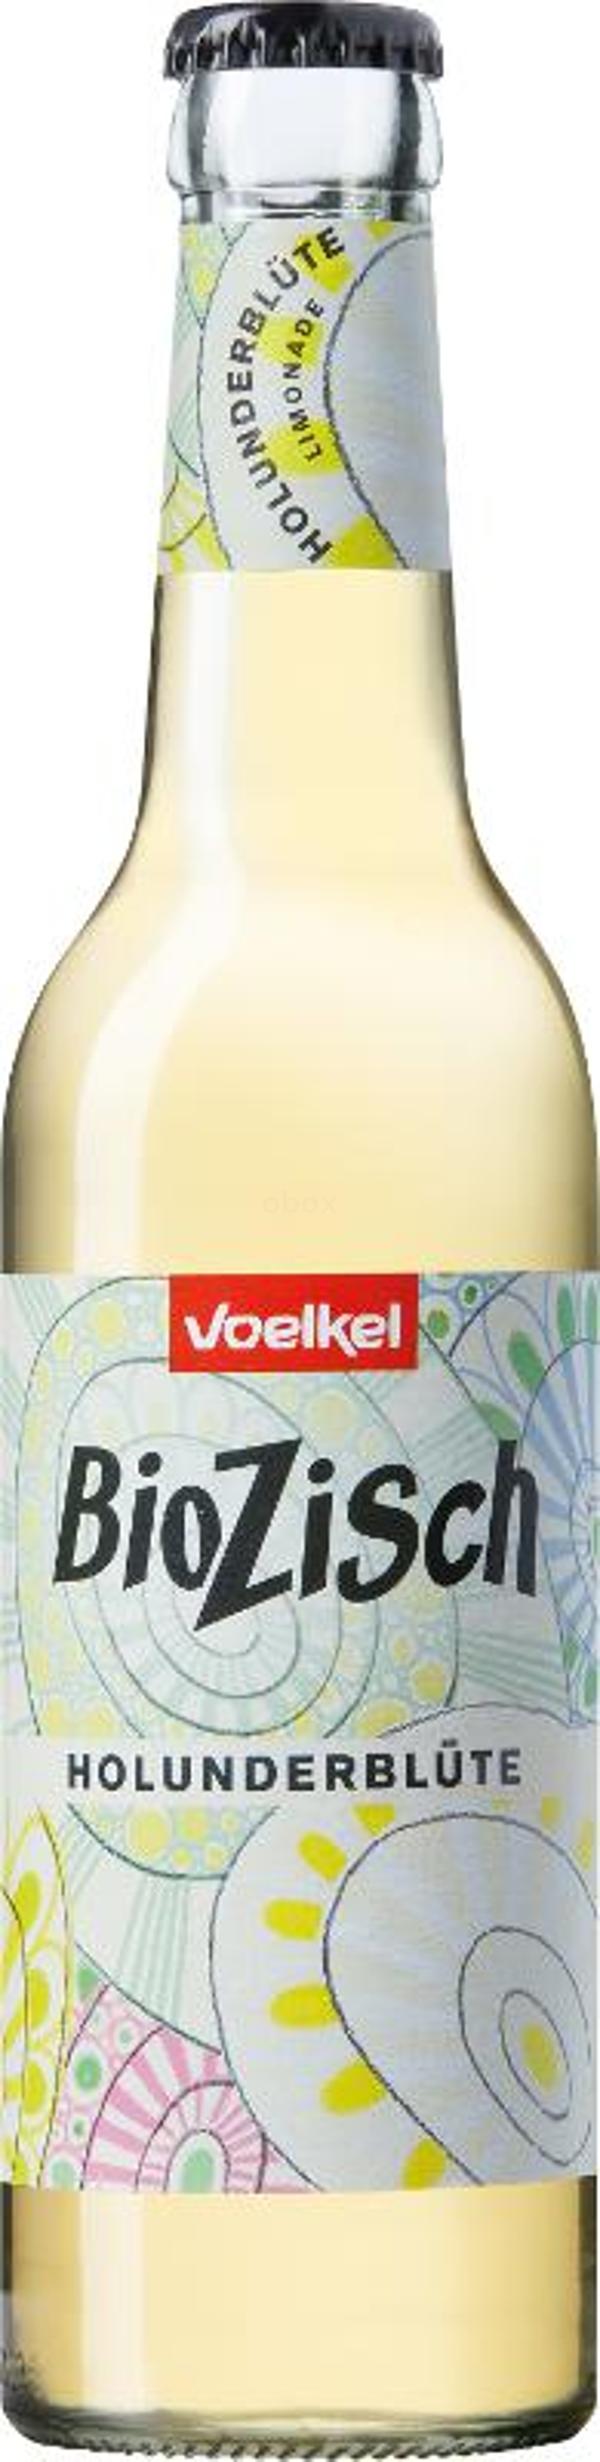 Produktfoto zu Voelkel Bio Zisch Holunderblüte - 0,33 l